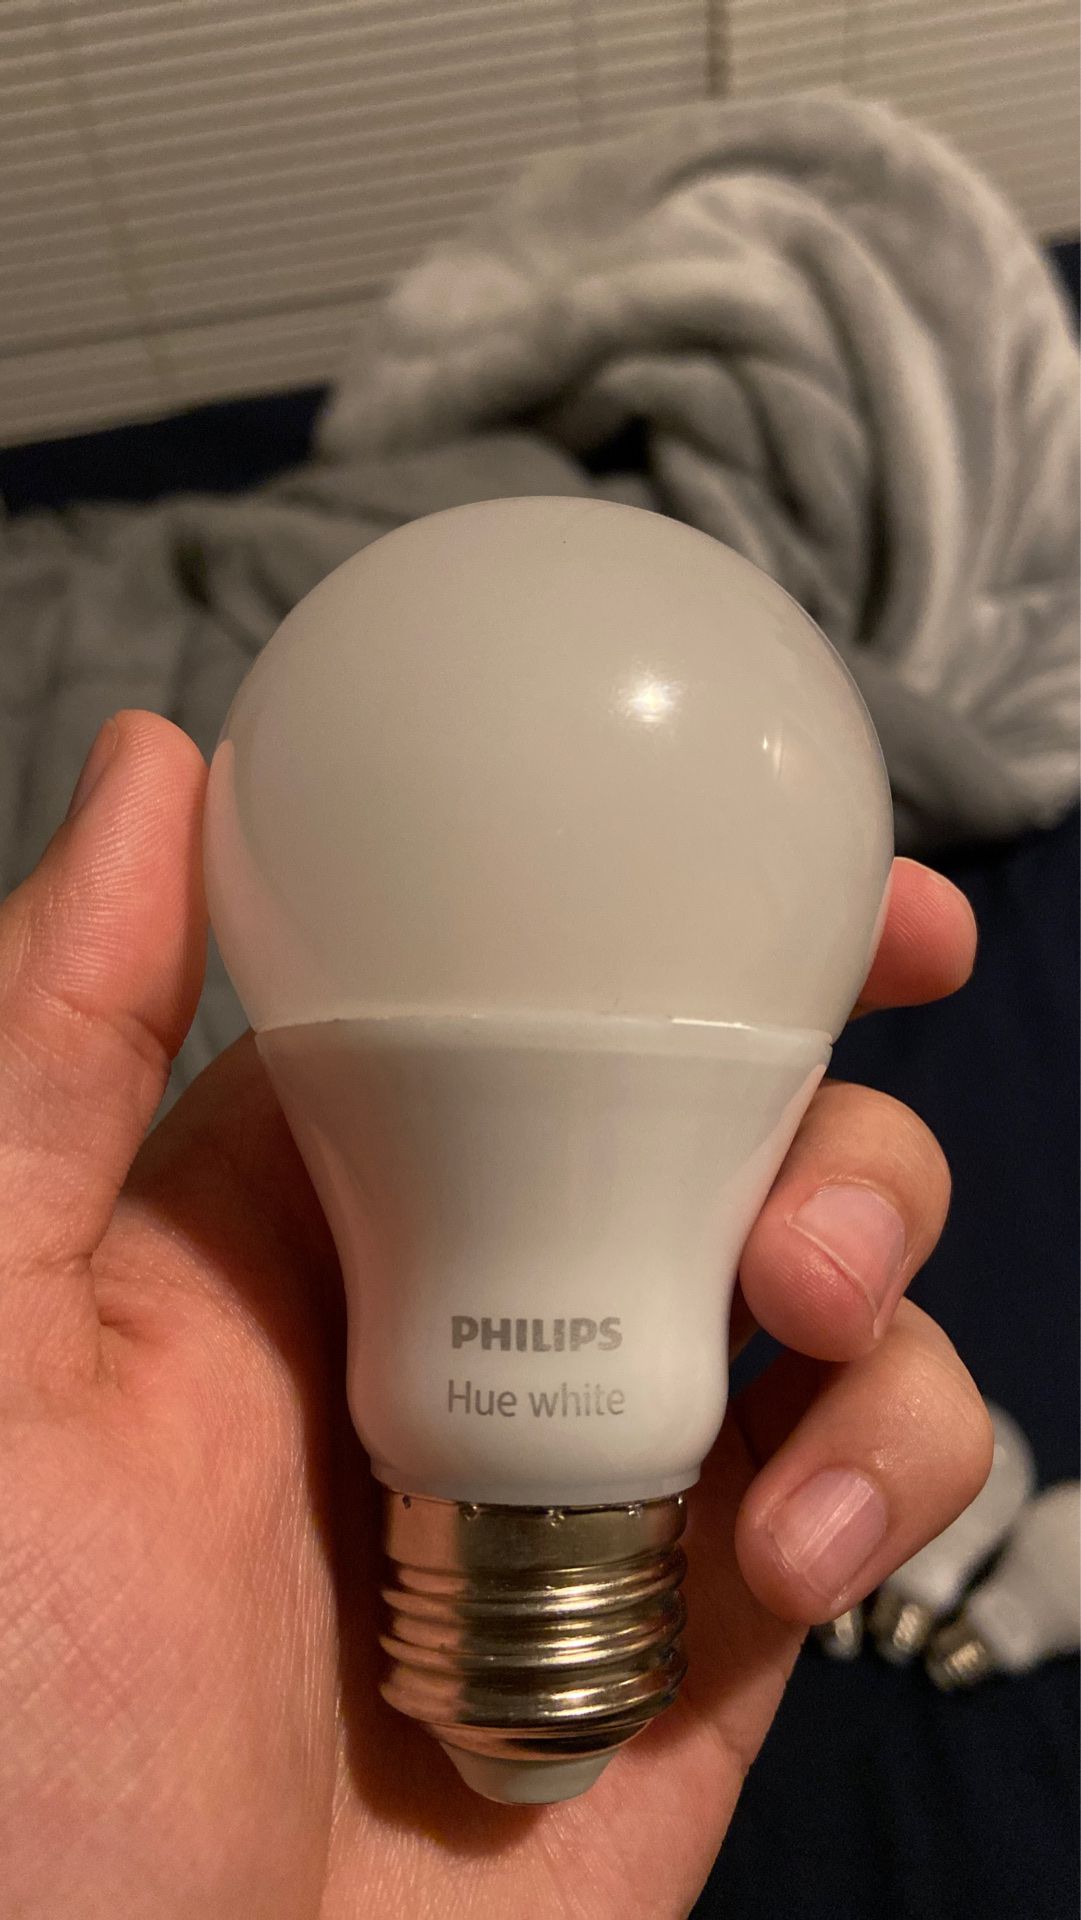 Philips Hue white light bulbs